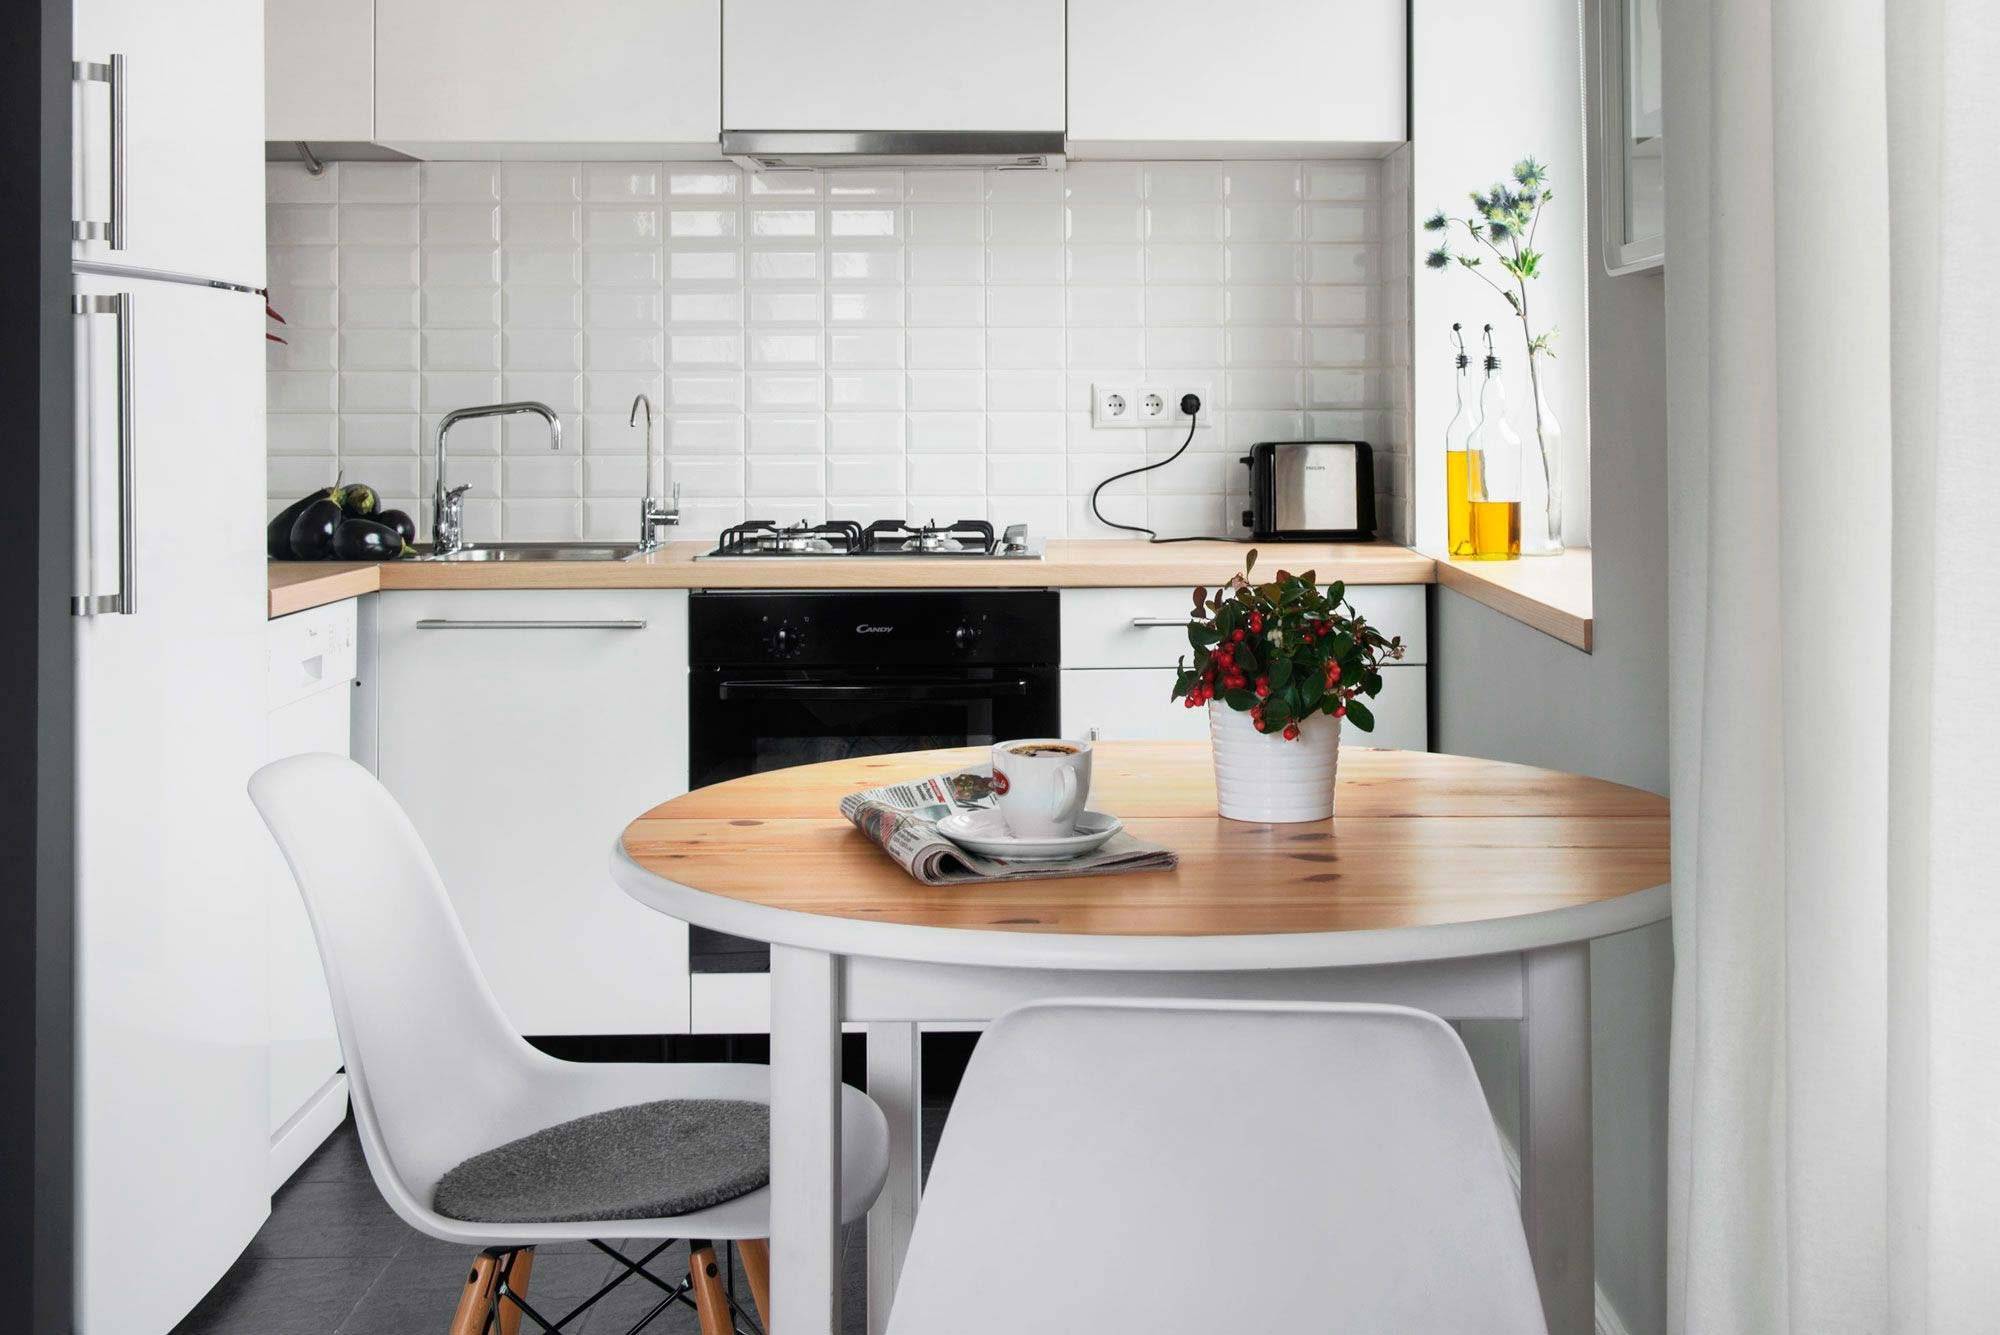 15 идей для экономии места в маленькой кухне